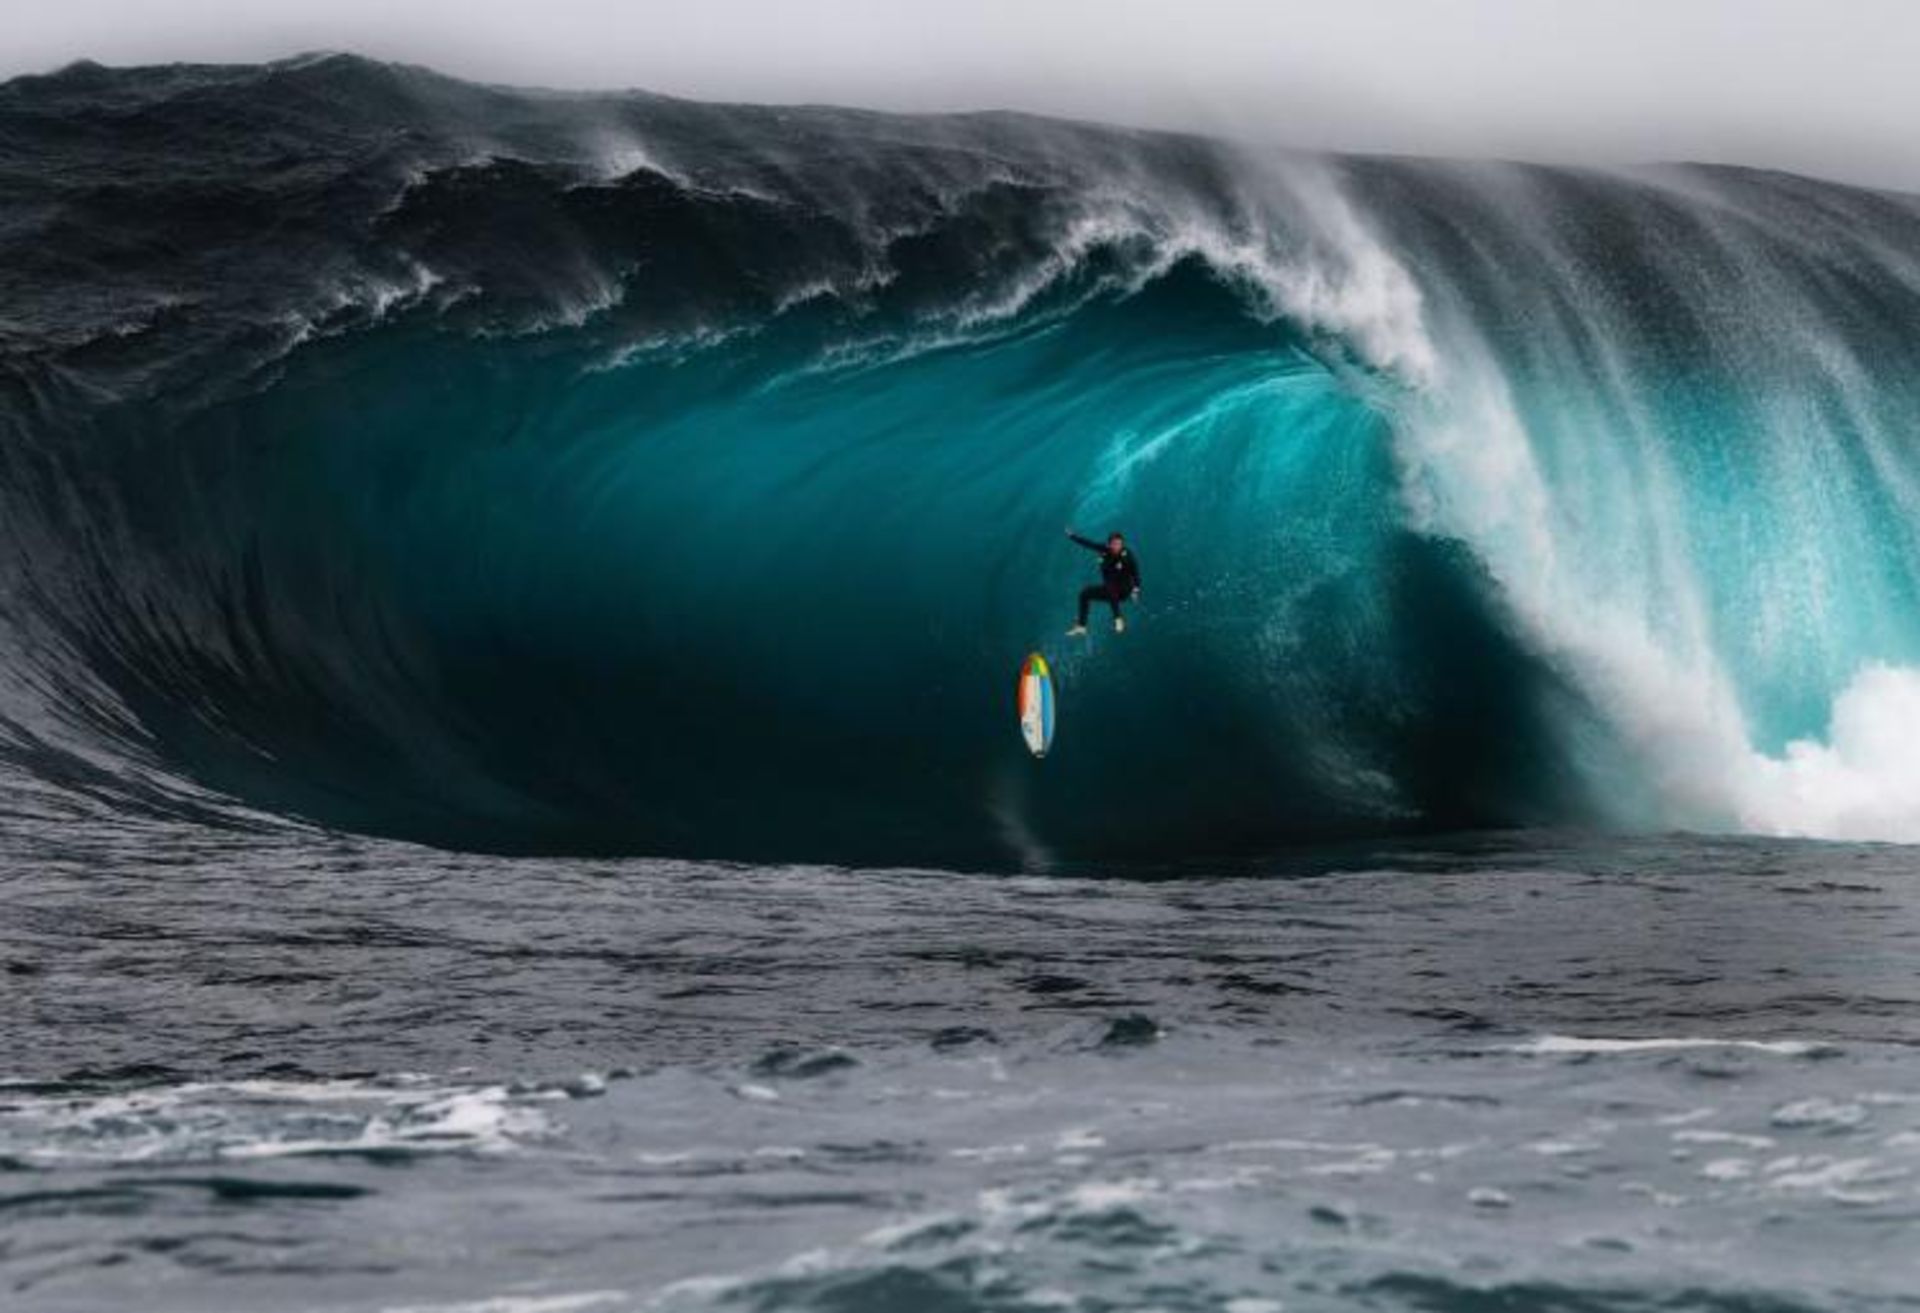 مرجع متخصصين ايران فيناليست رن مك‌گان در مسابقه عكاسي 2020 Surf Photo Nikon Australia